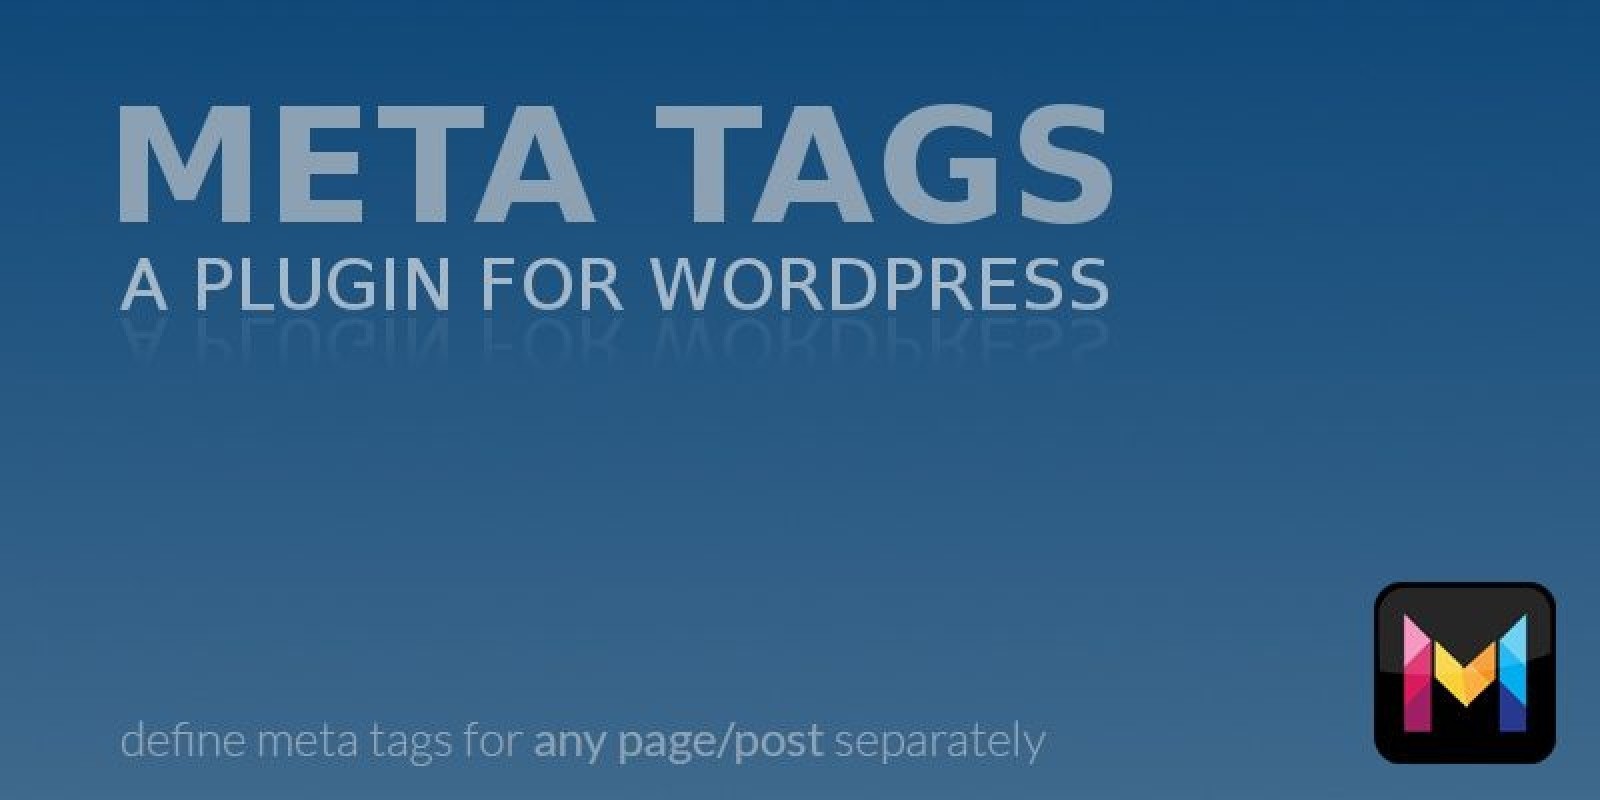 Wordpress tags